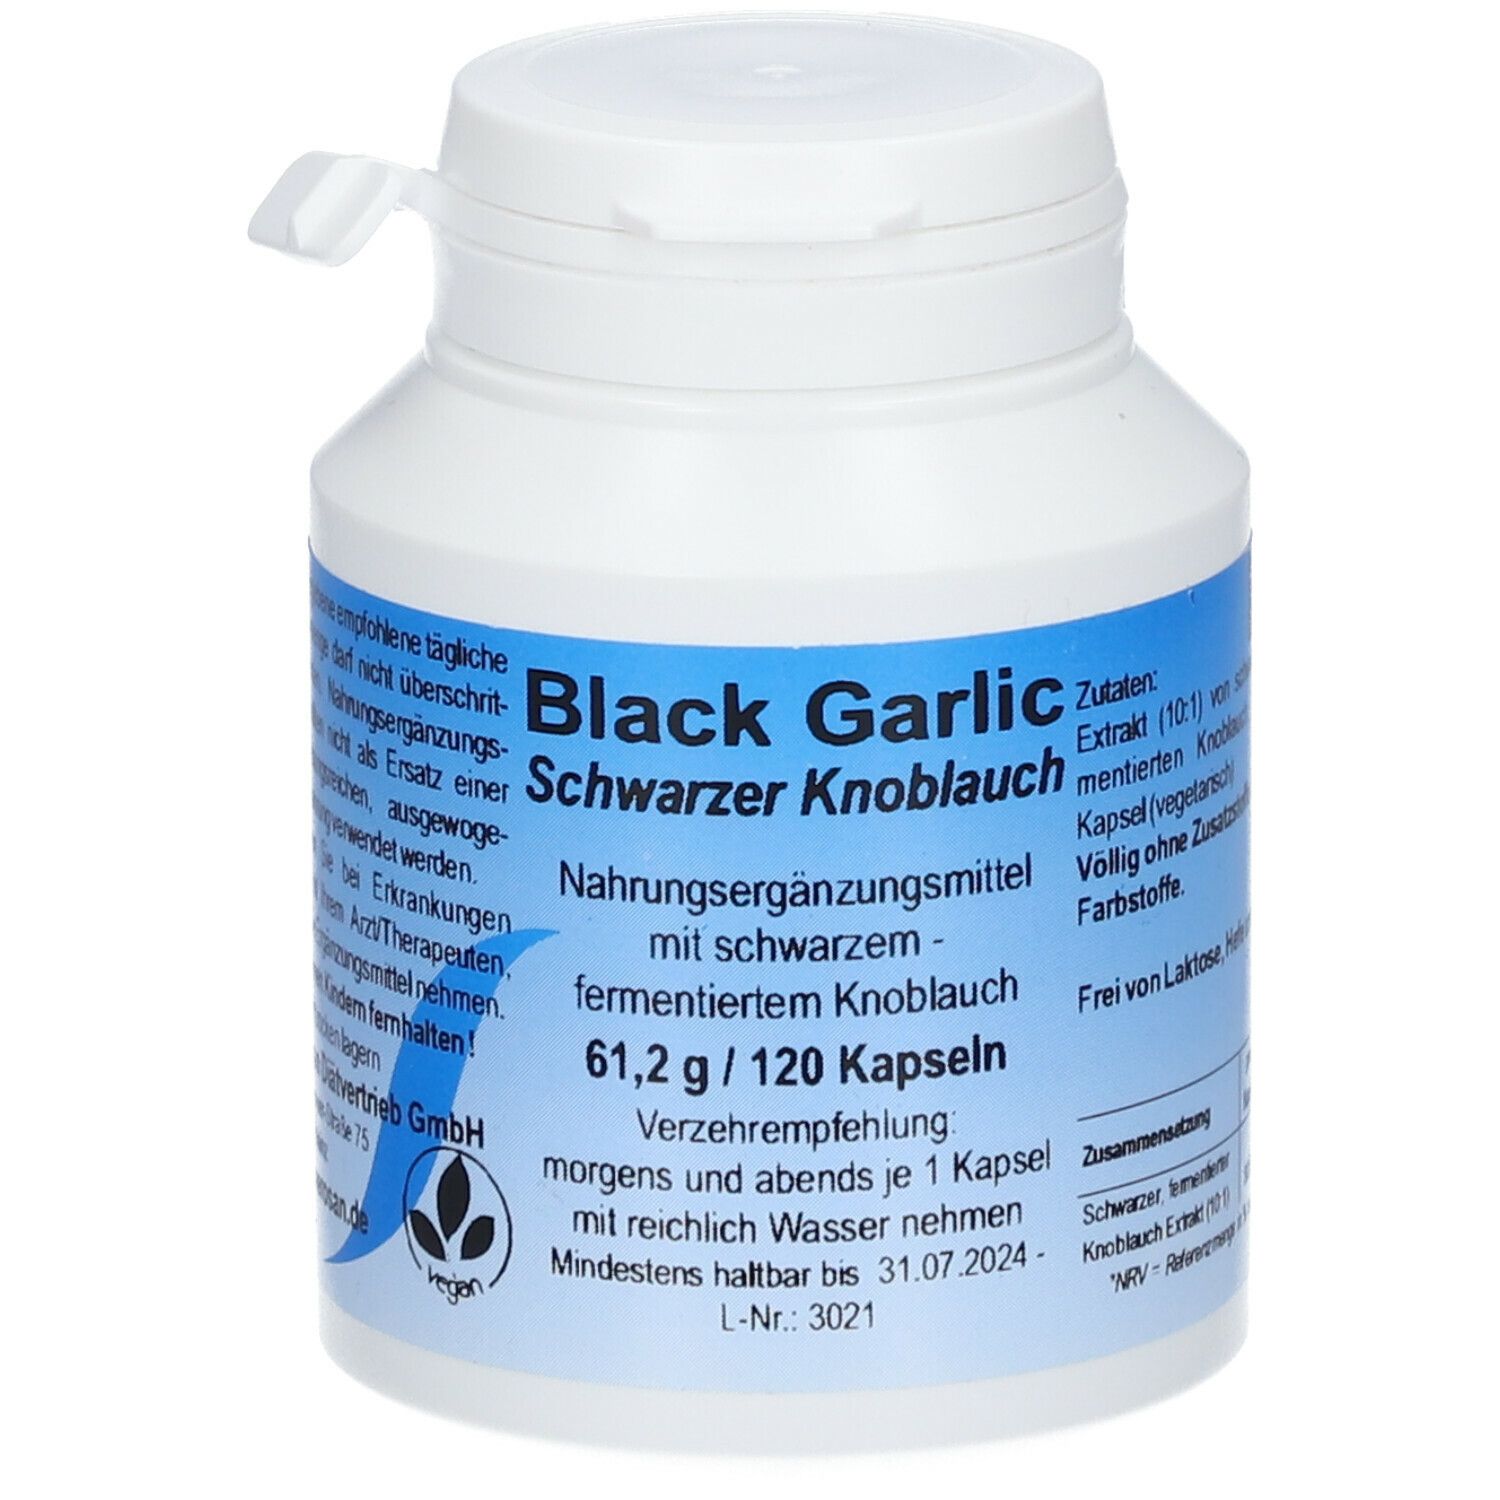 Image of Black Garlic Schwarzer Knoblauch